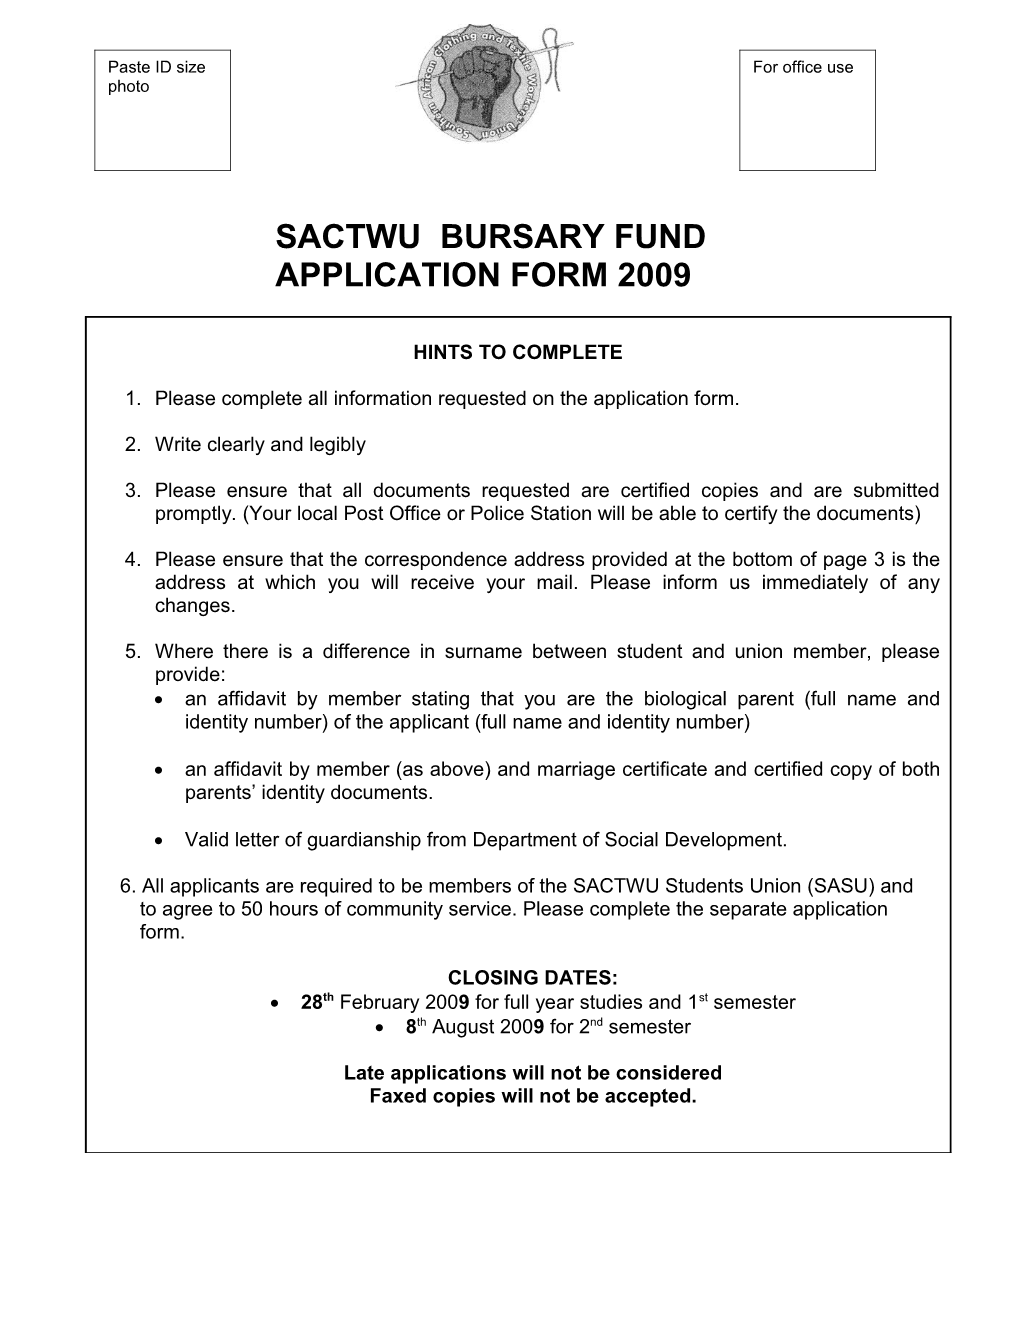 Sactwu Bursary Fund